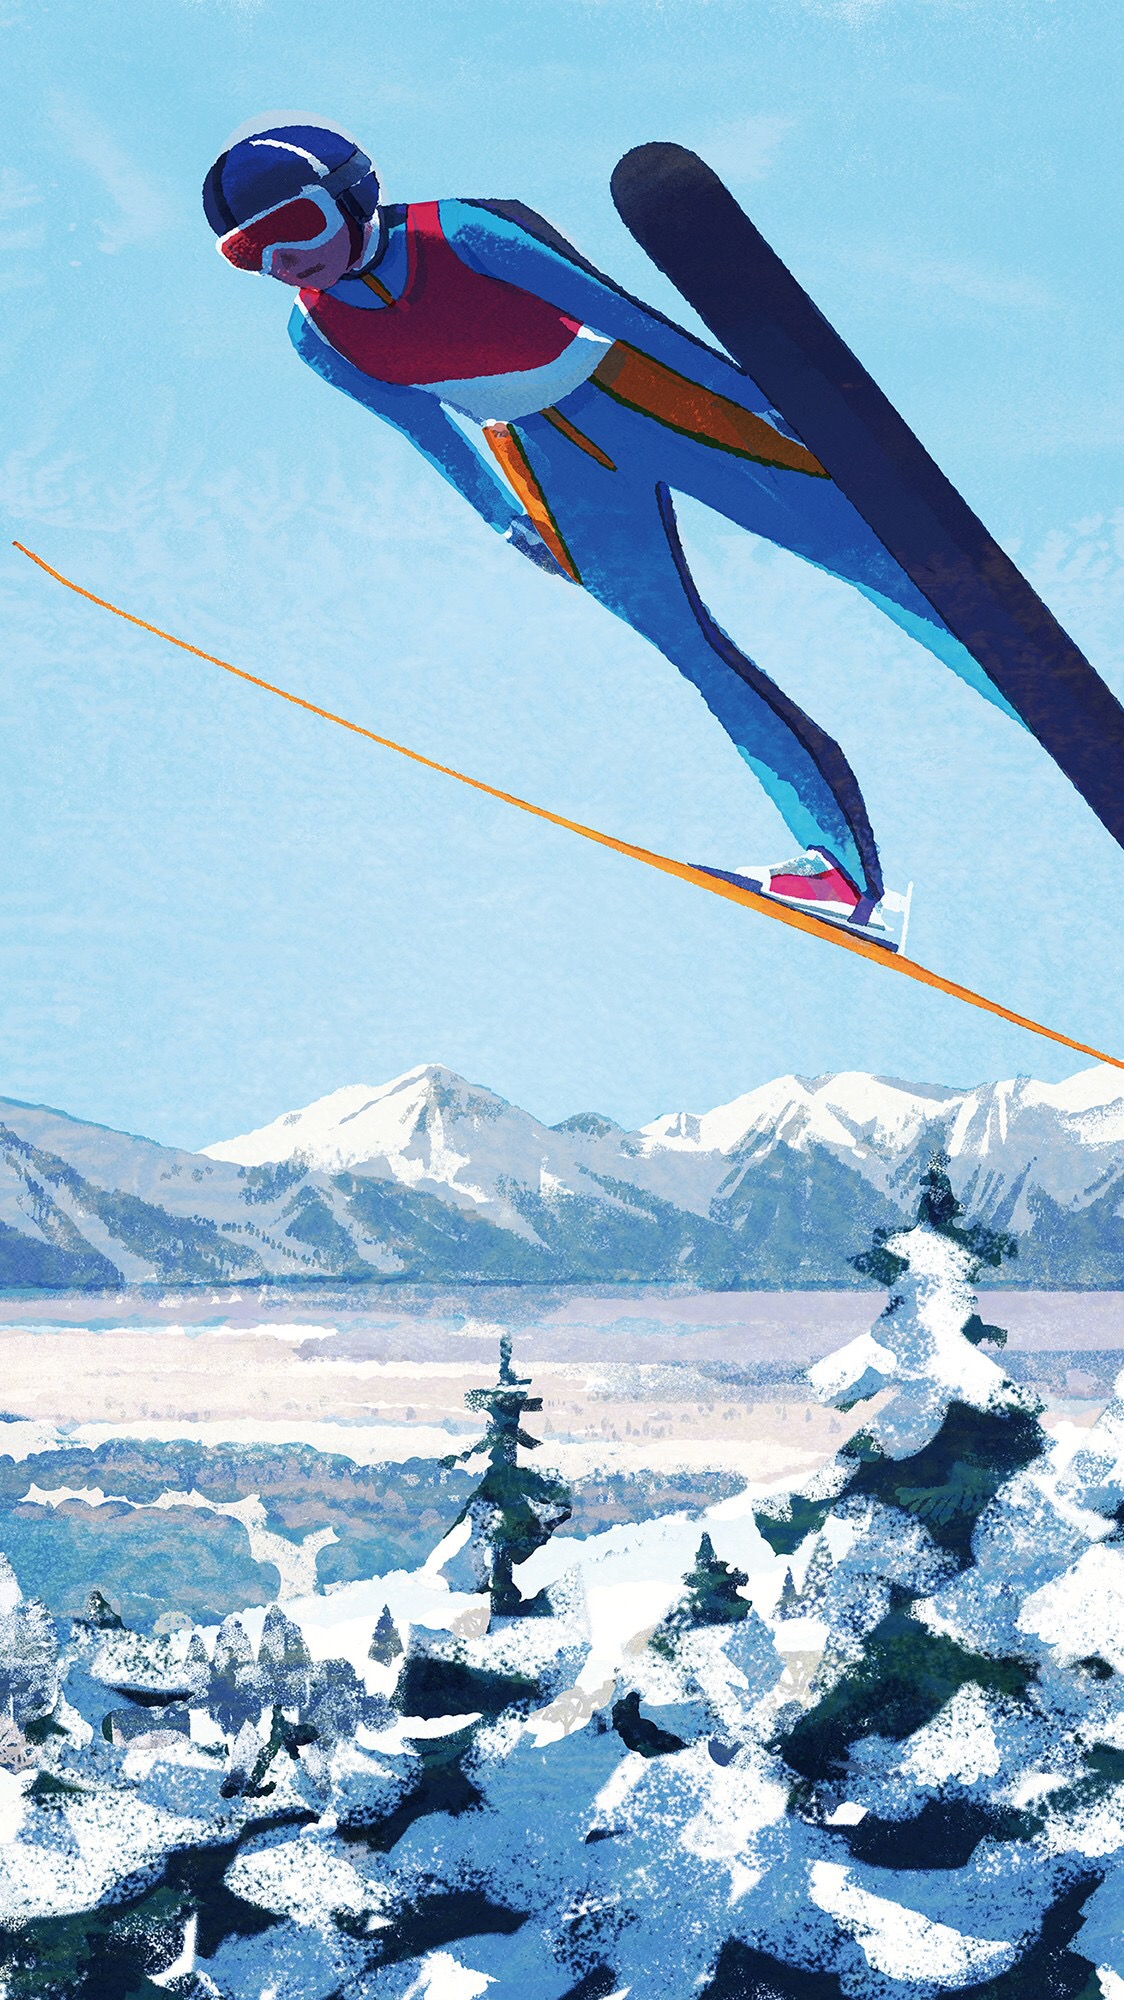 日本插画师 tatsuro kiuchi 冬奥会系列插画作品:跳台滑雪